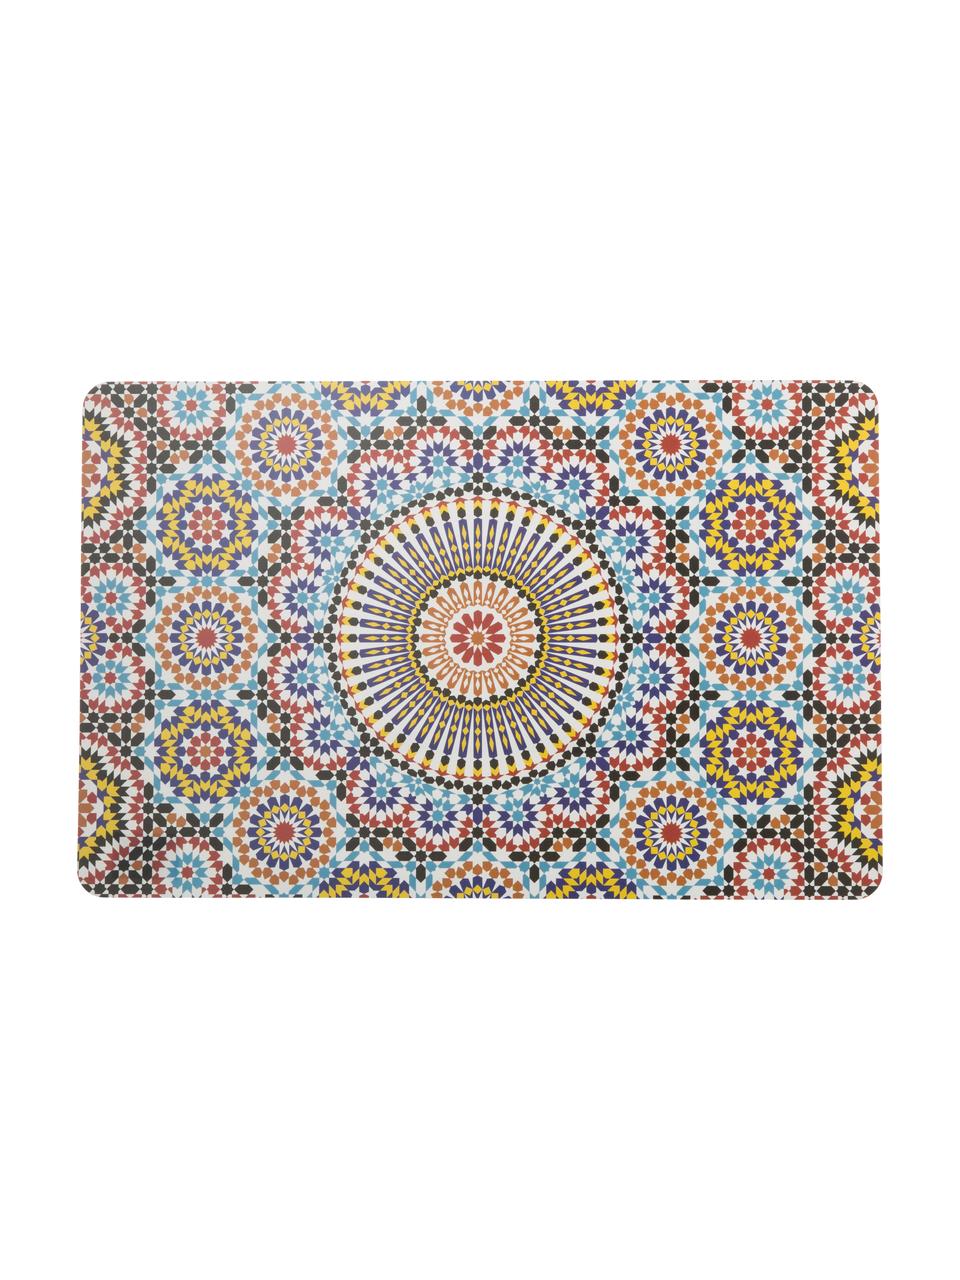 Set de manteles individuales Marrakech, 6 uds.., Plástico, Multicolor, An 28 x L 44 cm